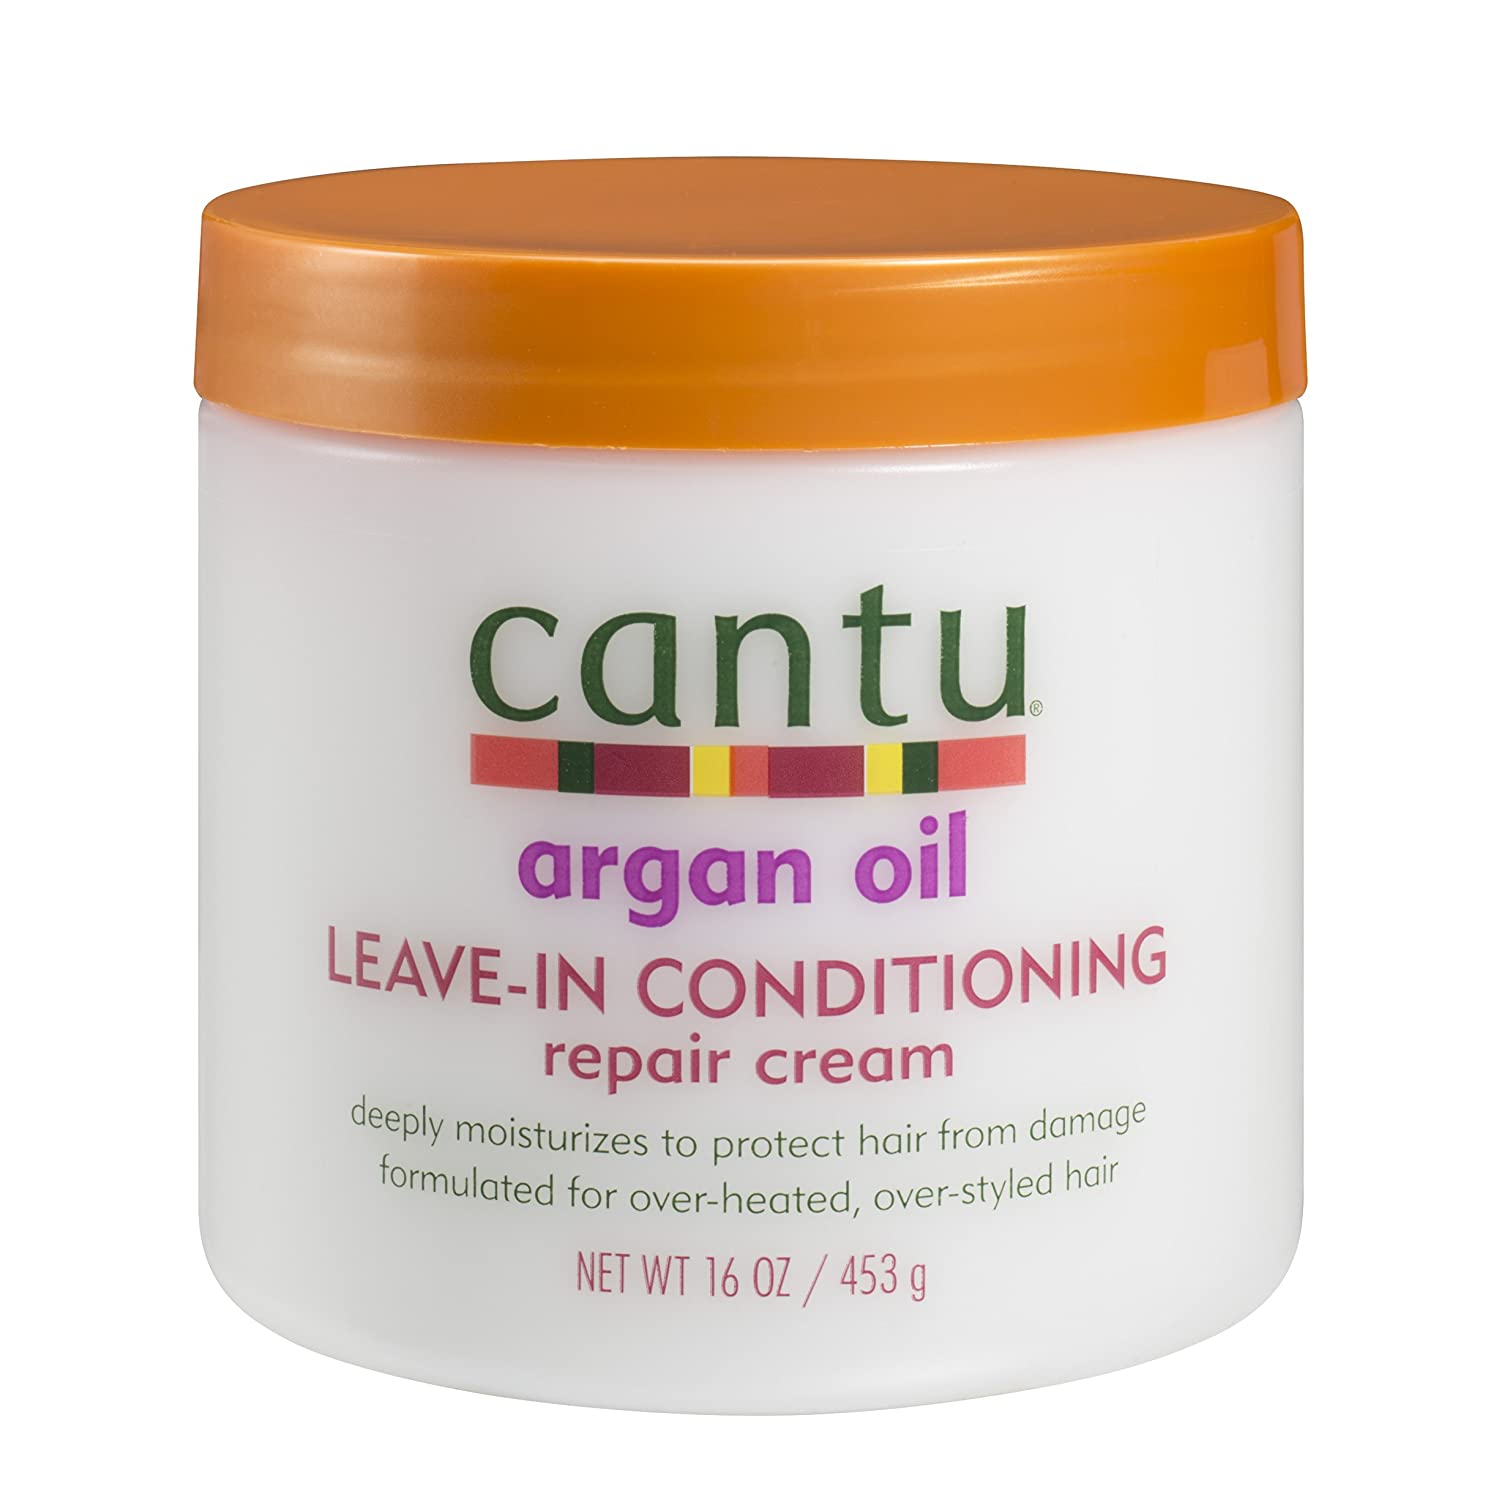 Cantu Argan Oil Leave-in Conditioning Repair Cream 16 oz